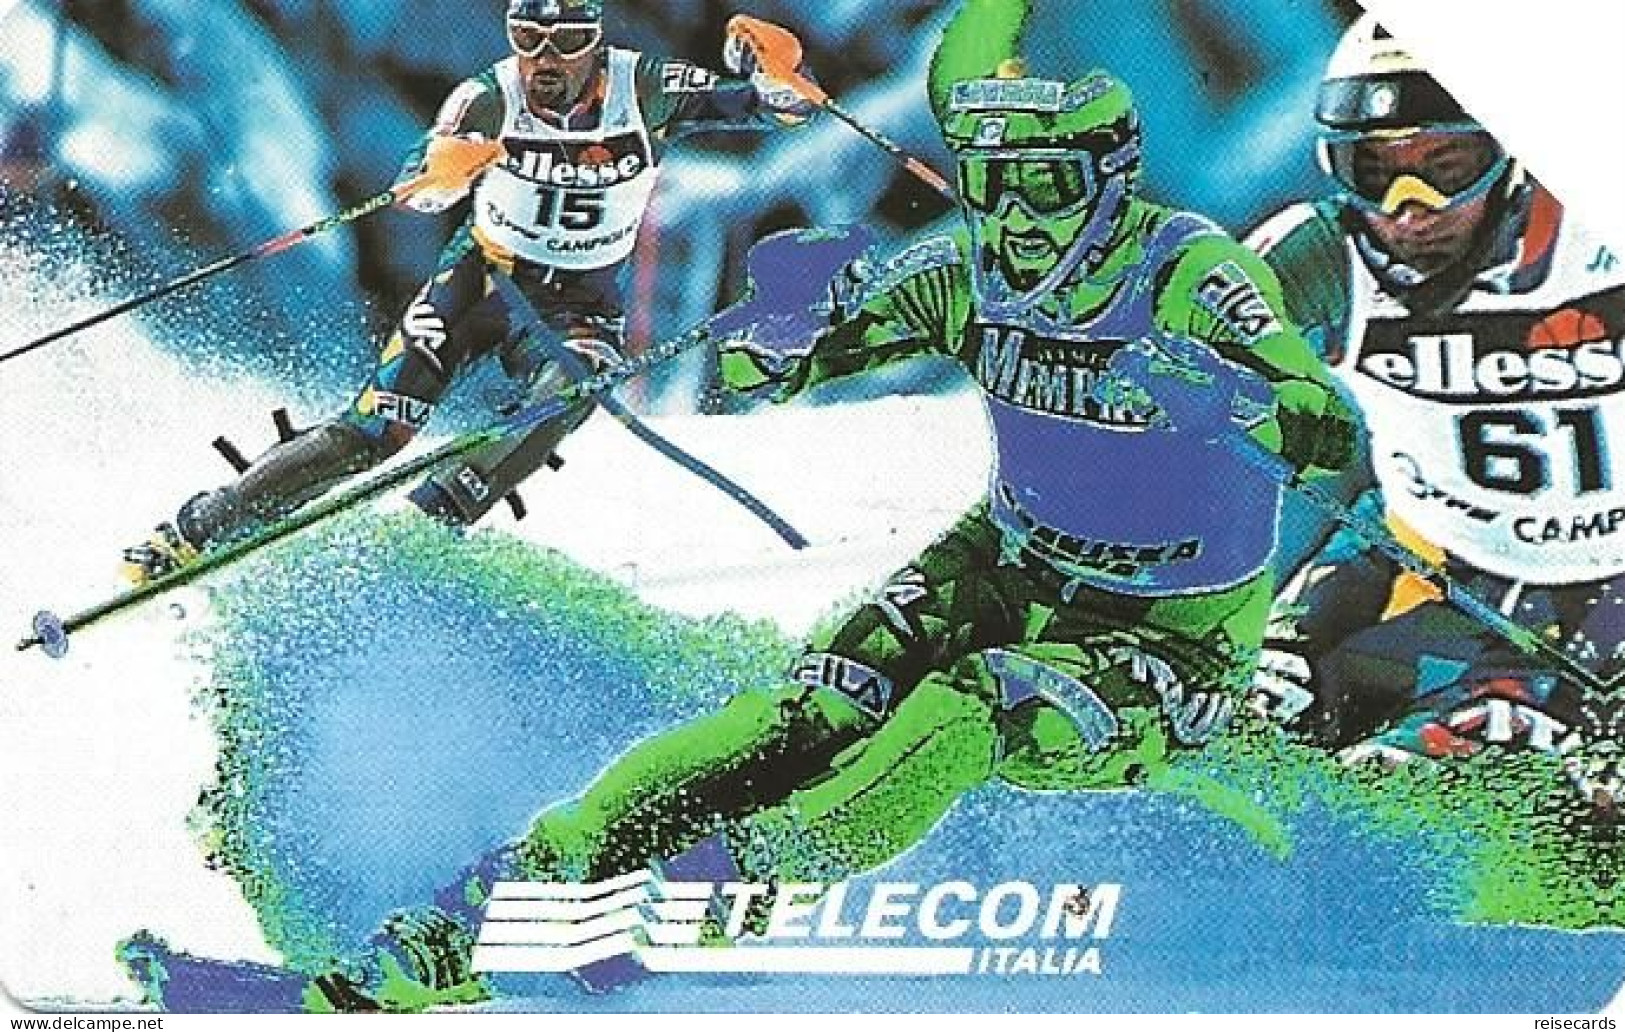 Italy: Telecom Italia - Campionati Mondiali Di Sci-Sestriere 1997 - Openbare Reclame